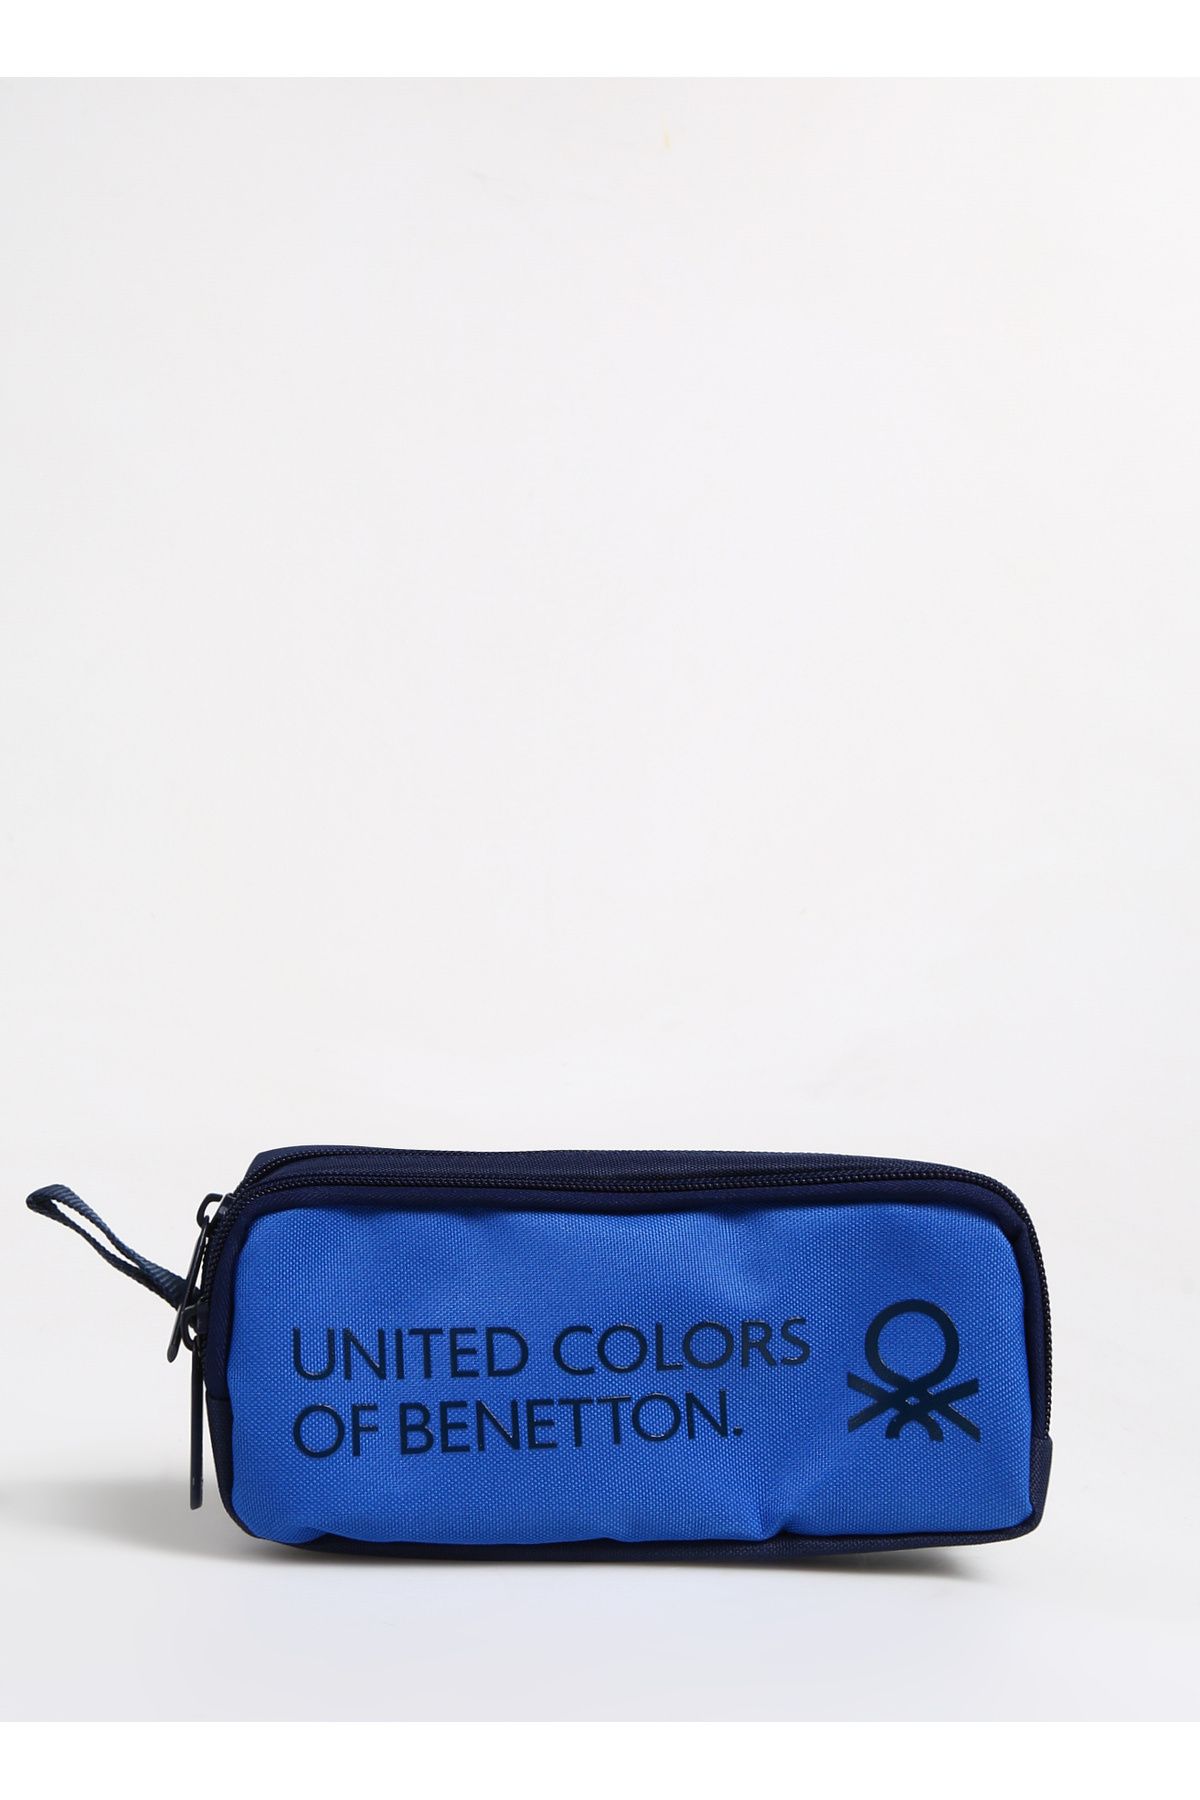 Benetton Lacivert - Mavi Erkek Kalem Çantası BENETTON 3708